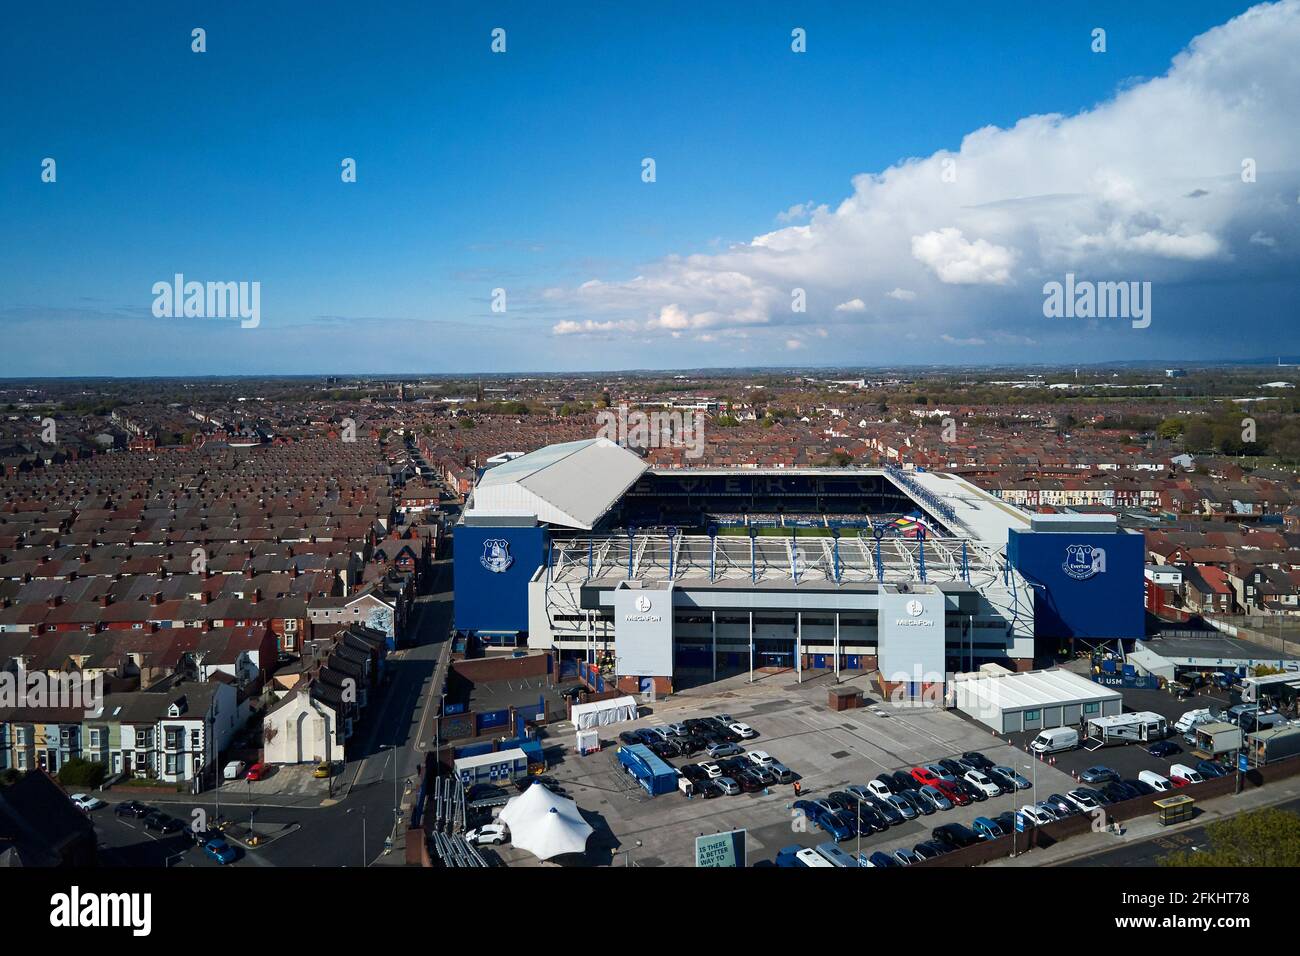 Vista aerea del Goodison Park che mostra lo stadio in un ambiente urbano circondato da case residenziali Foto Stock